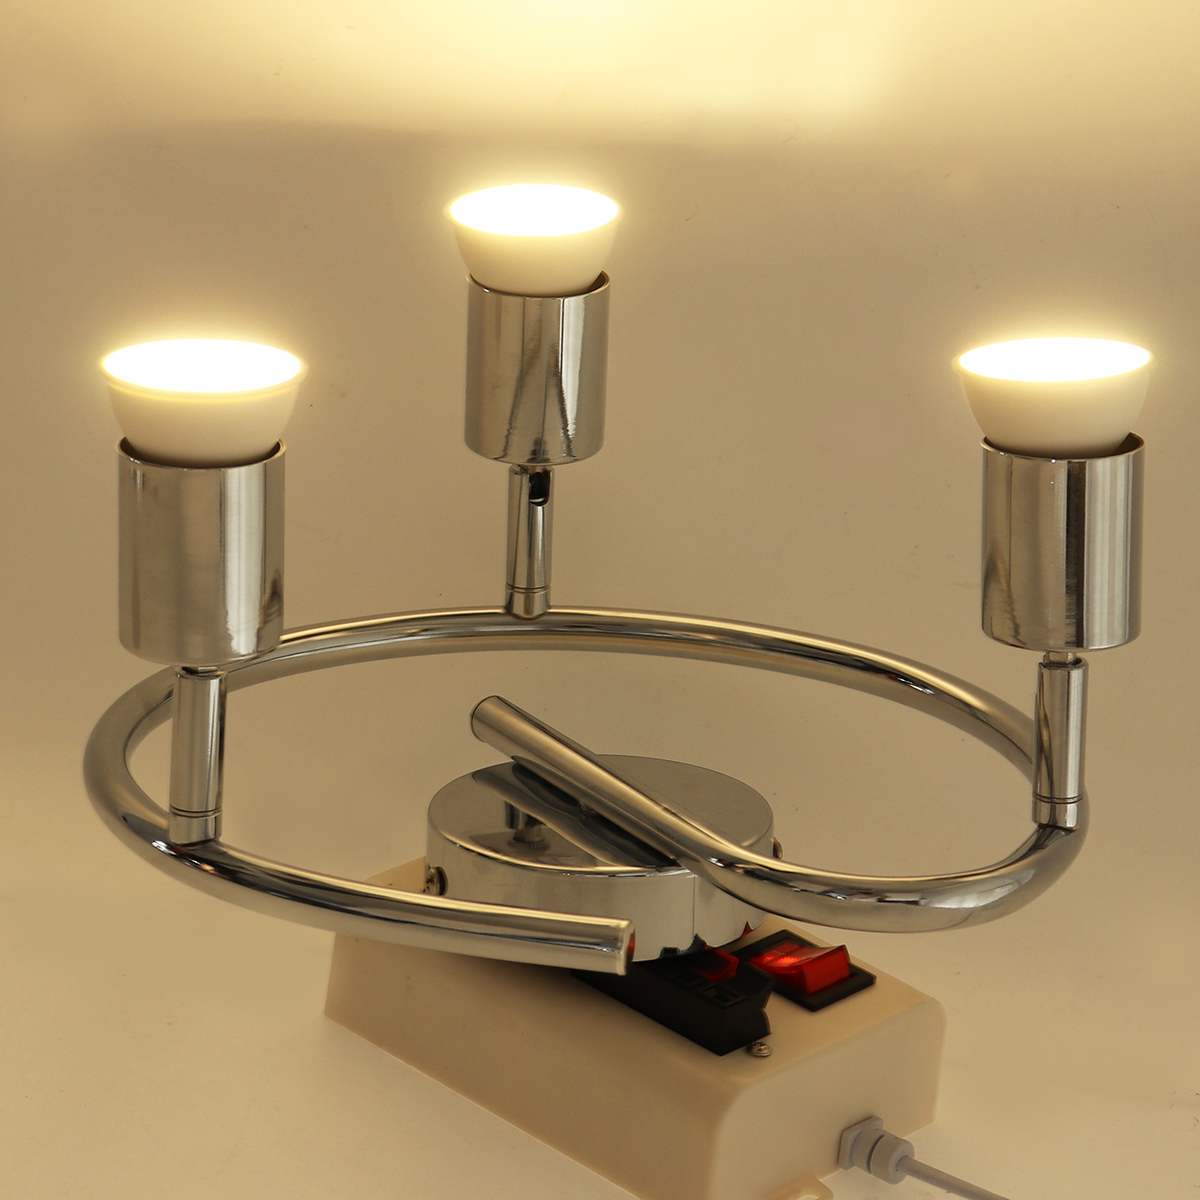 3-Heads-GU10-LED-Downlight-Ceiling-Light-Adjustable-Spotlight-Home-Office-Wall-Lamp-85-265V-1732652-4